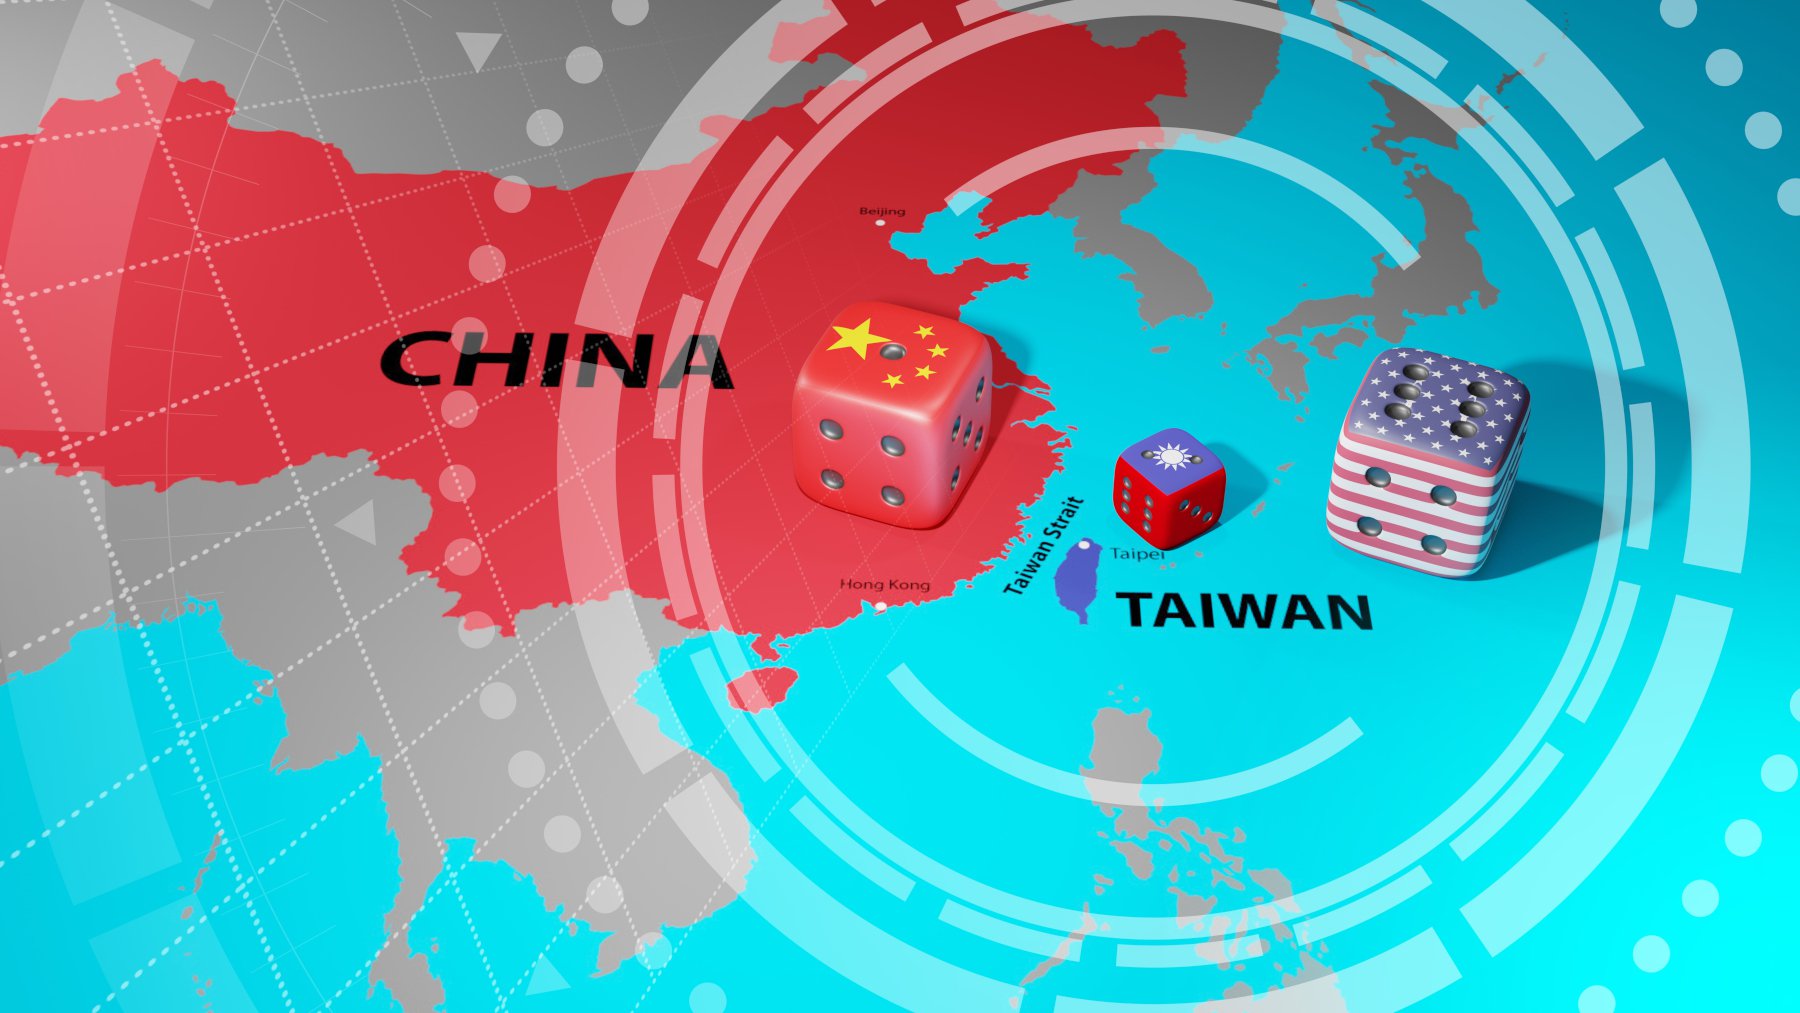 Άρχισαν τα όργανα και στην Άπω Ανατολή: Οι ΗΠΑ αναφέρουν ότι η Κίνα ετοιμάζει εισβολή στην Ταϊβάν